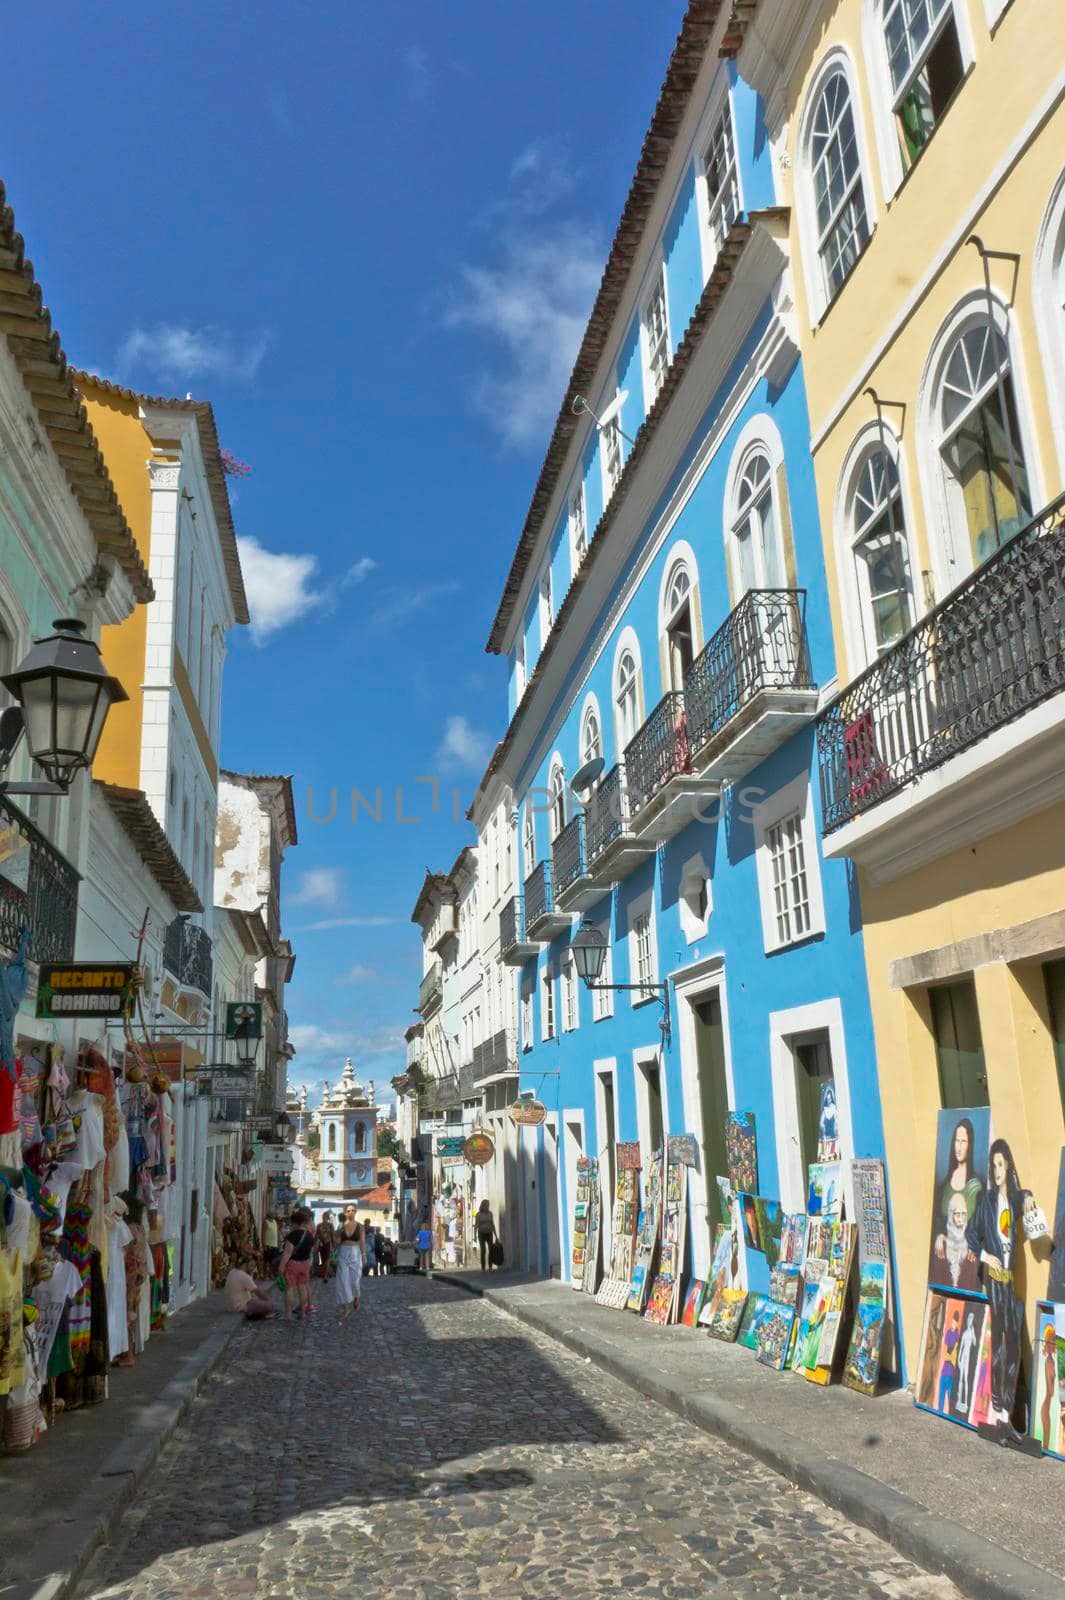 Salvador de Bahia, Pelourinho view with colorful buildings, Brazil, South America